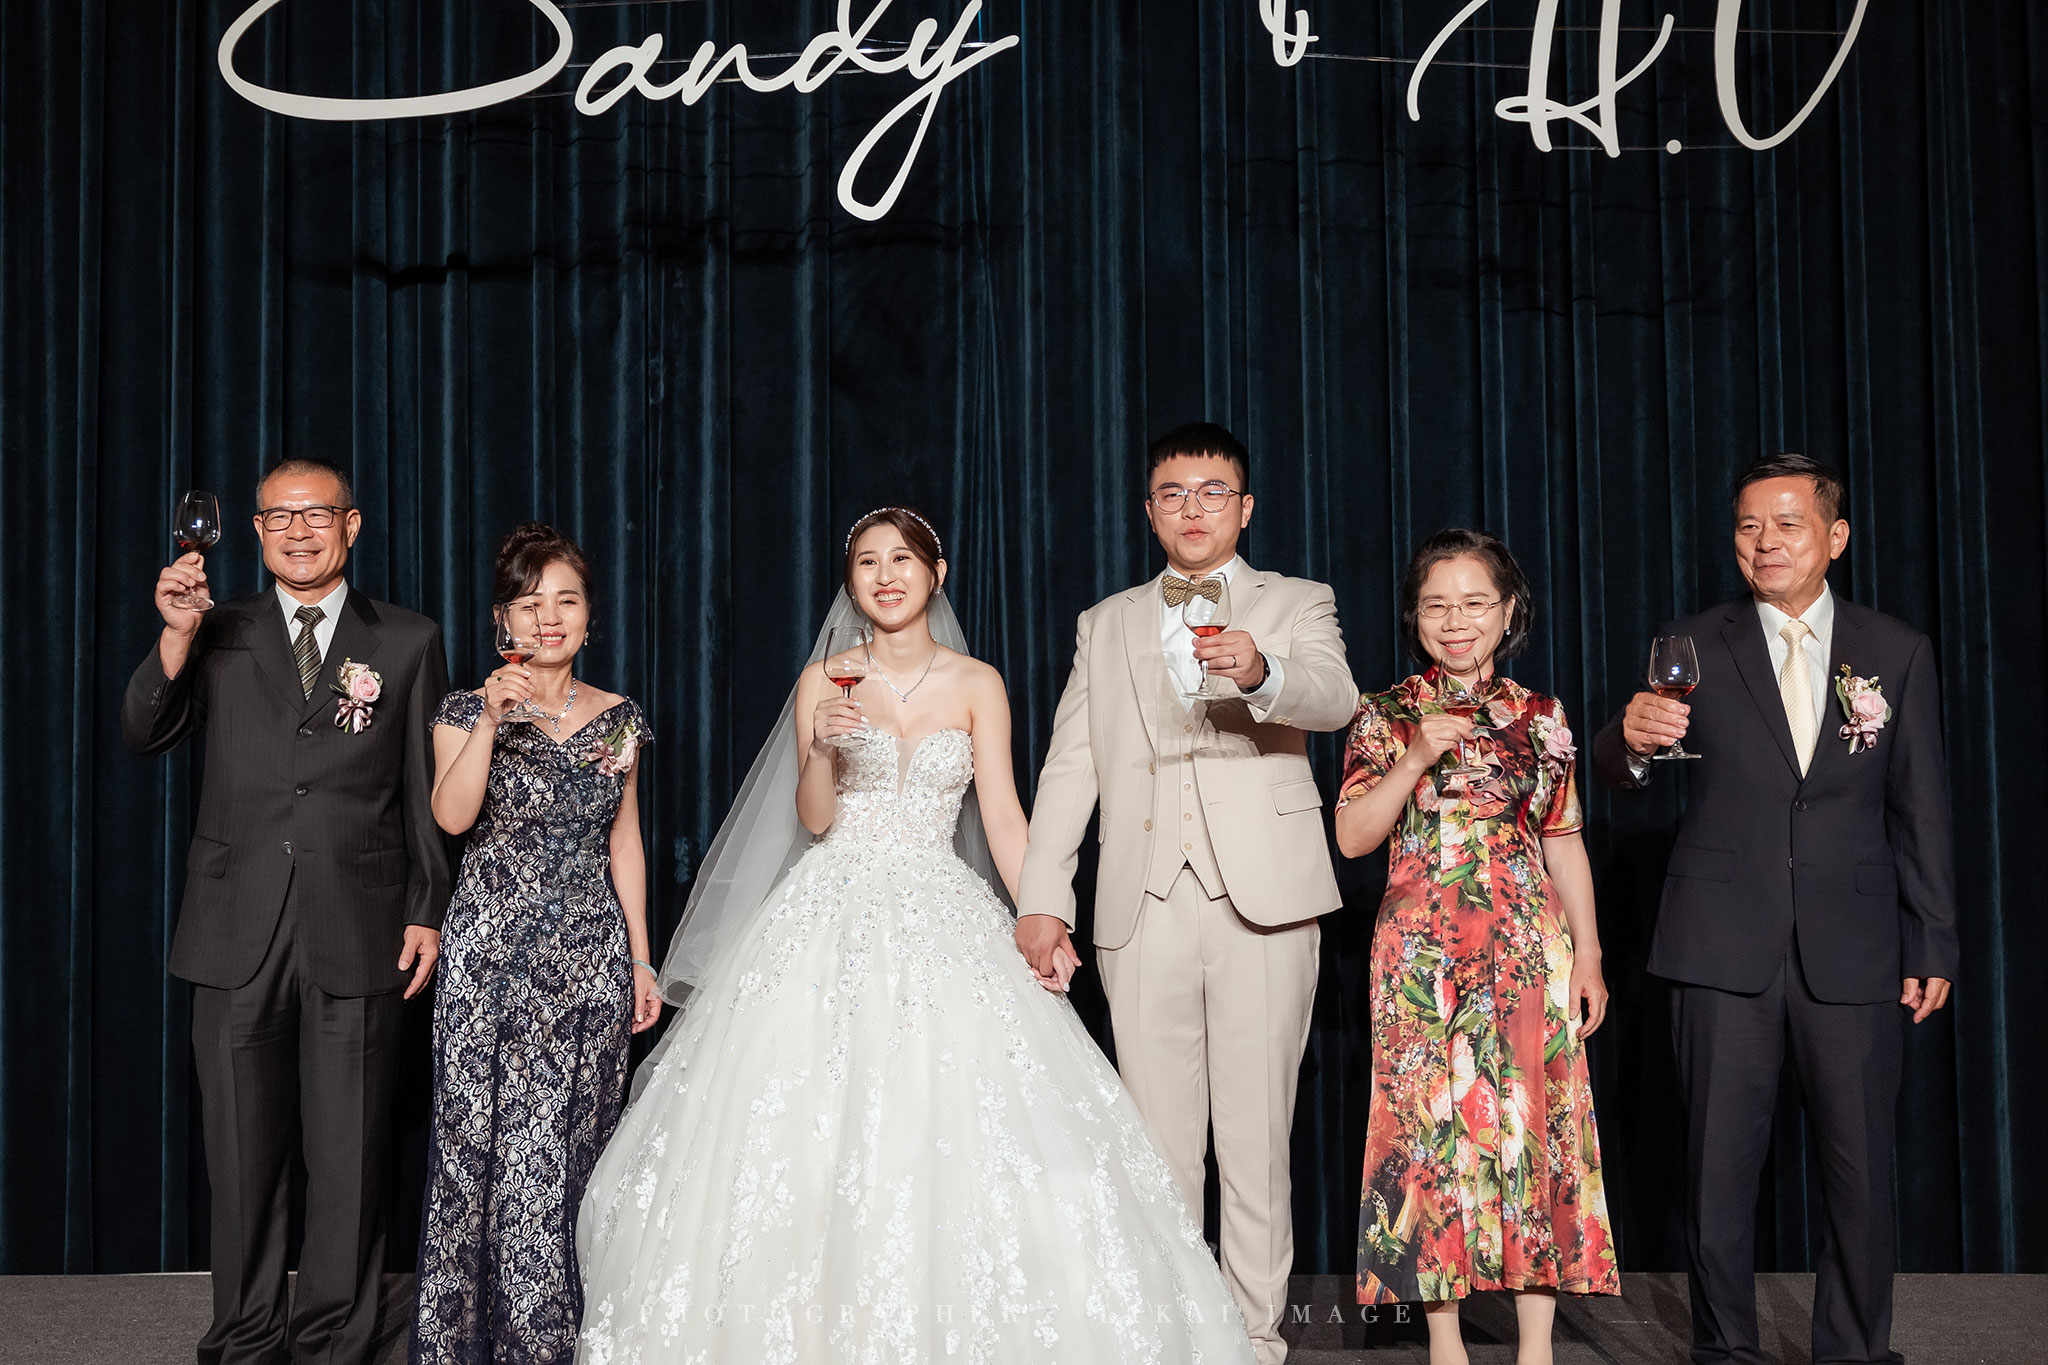 婚禮紀錄 - Sandy & H.C - 名人堂花園大飯店